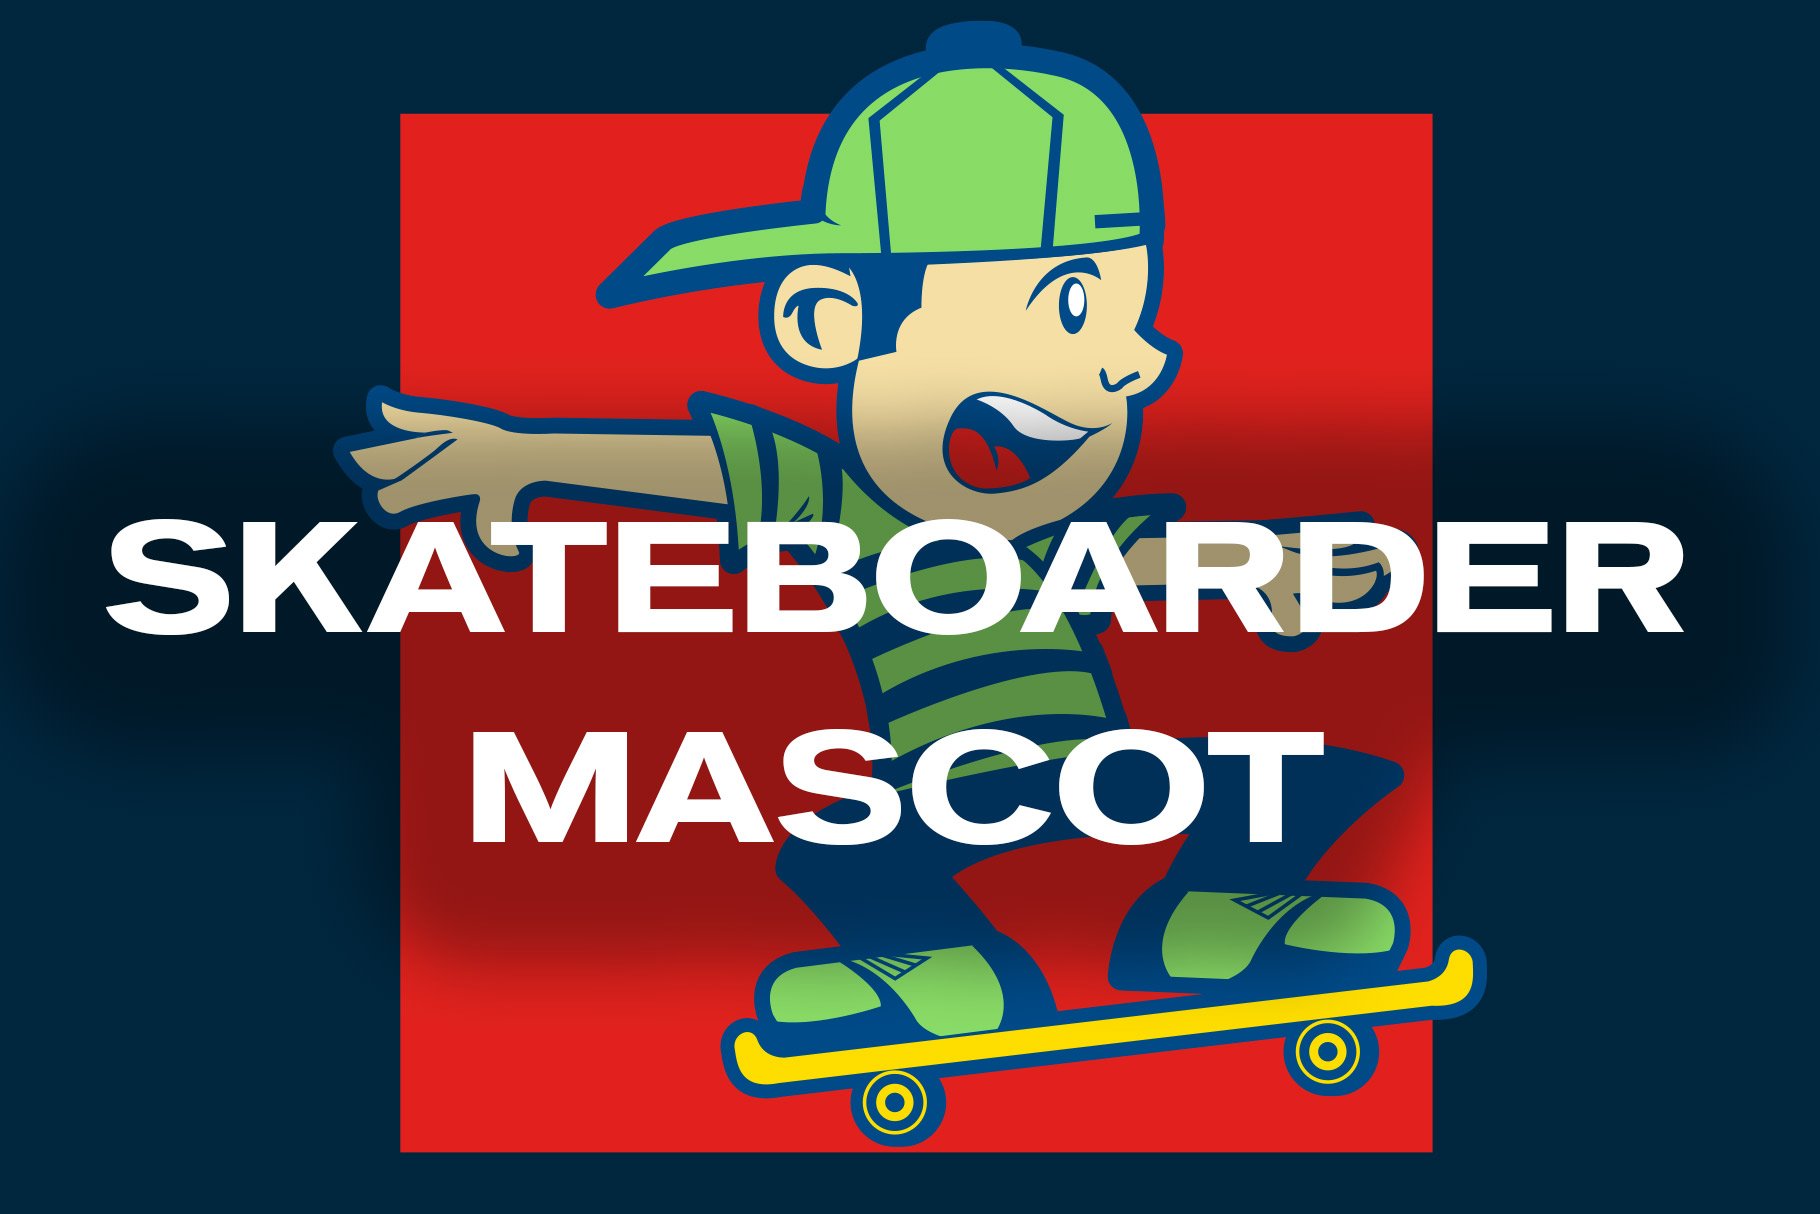 Skateboarder Mascot cover image.